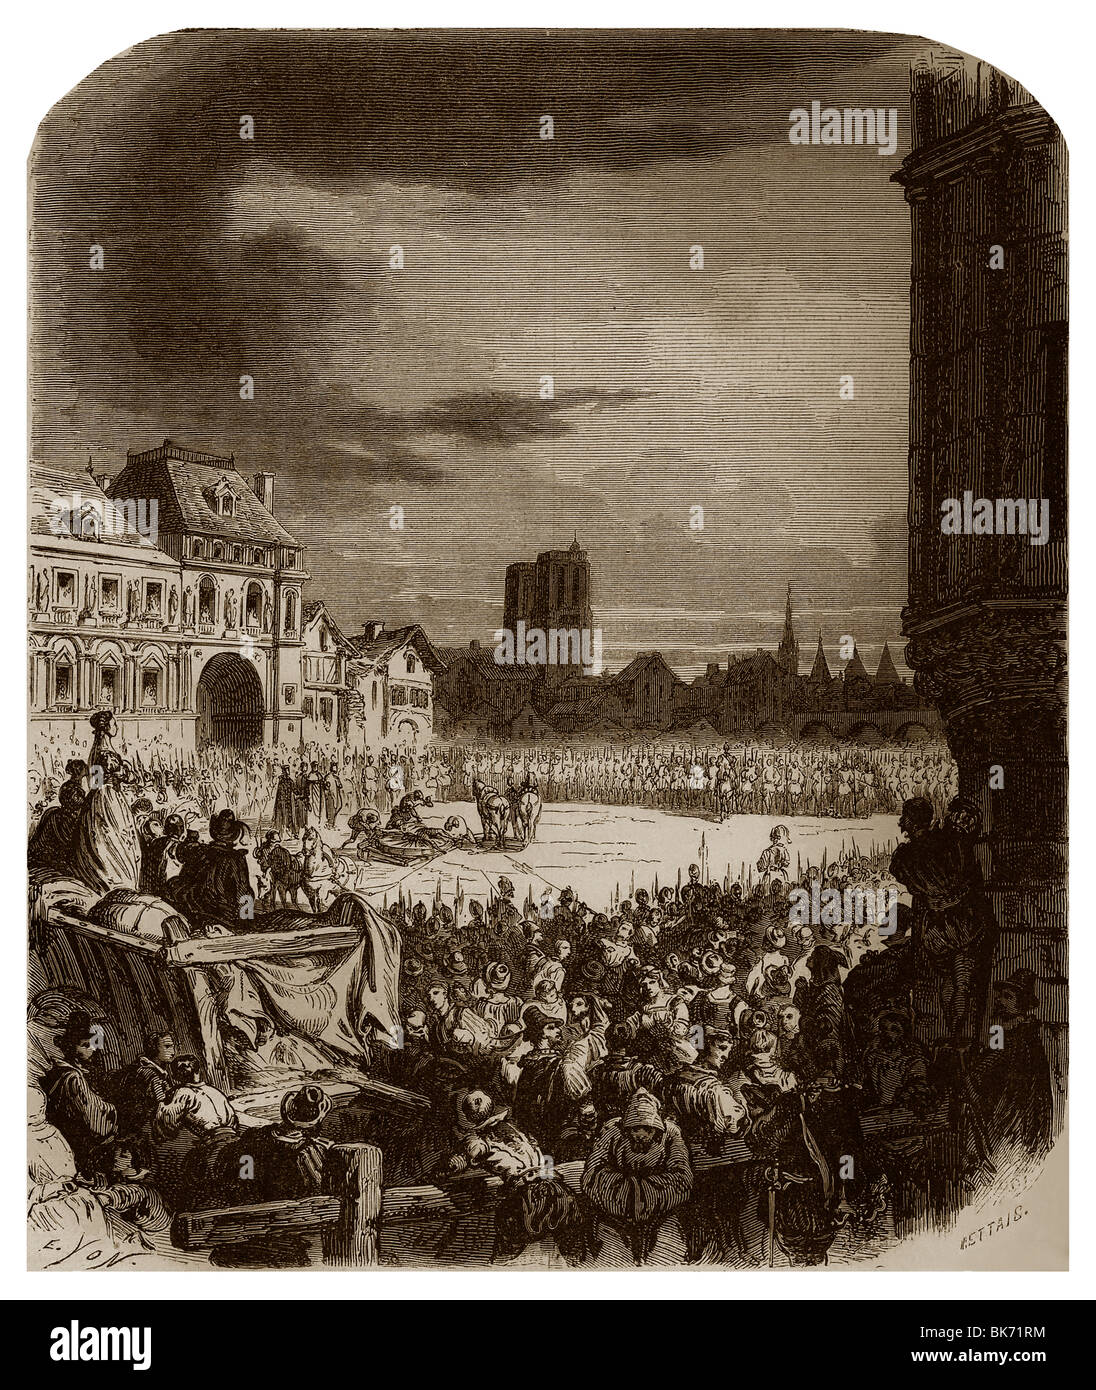 Le 27 mai 1610, François Ravaillac a été cantonnés dans la Place de Grève de Paris d'avoir assassiné le roi Henri IV de France. Banque D'Images